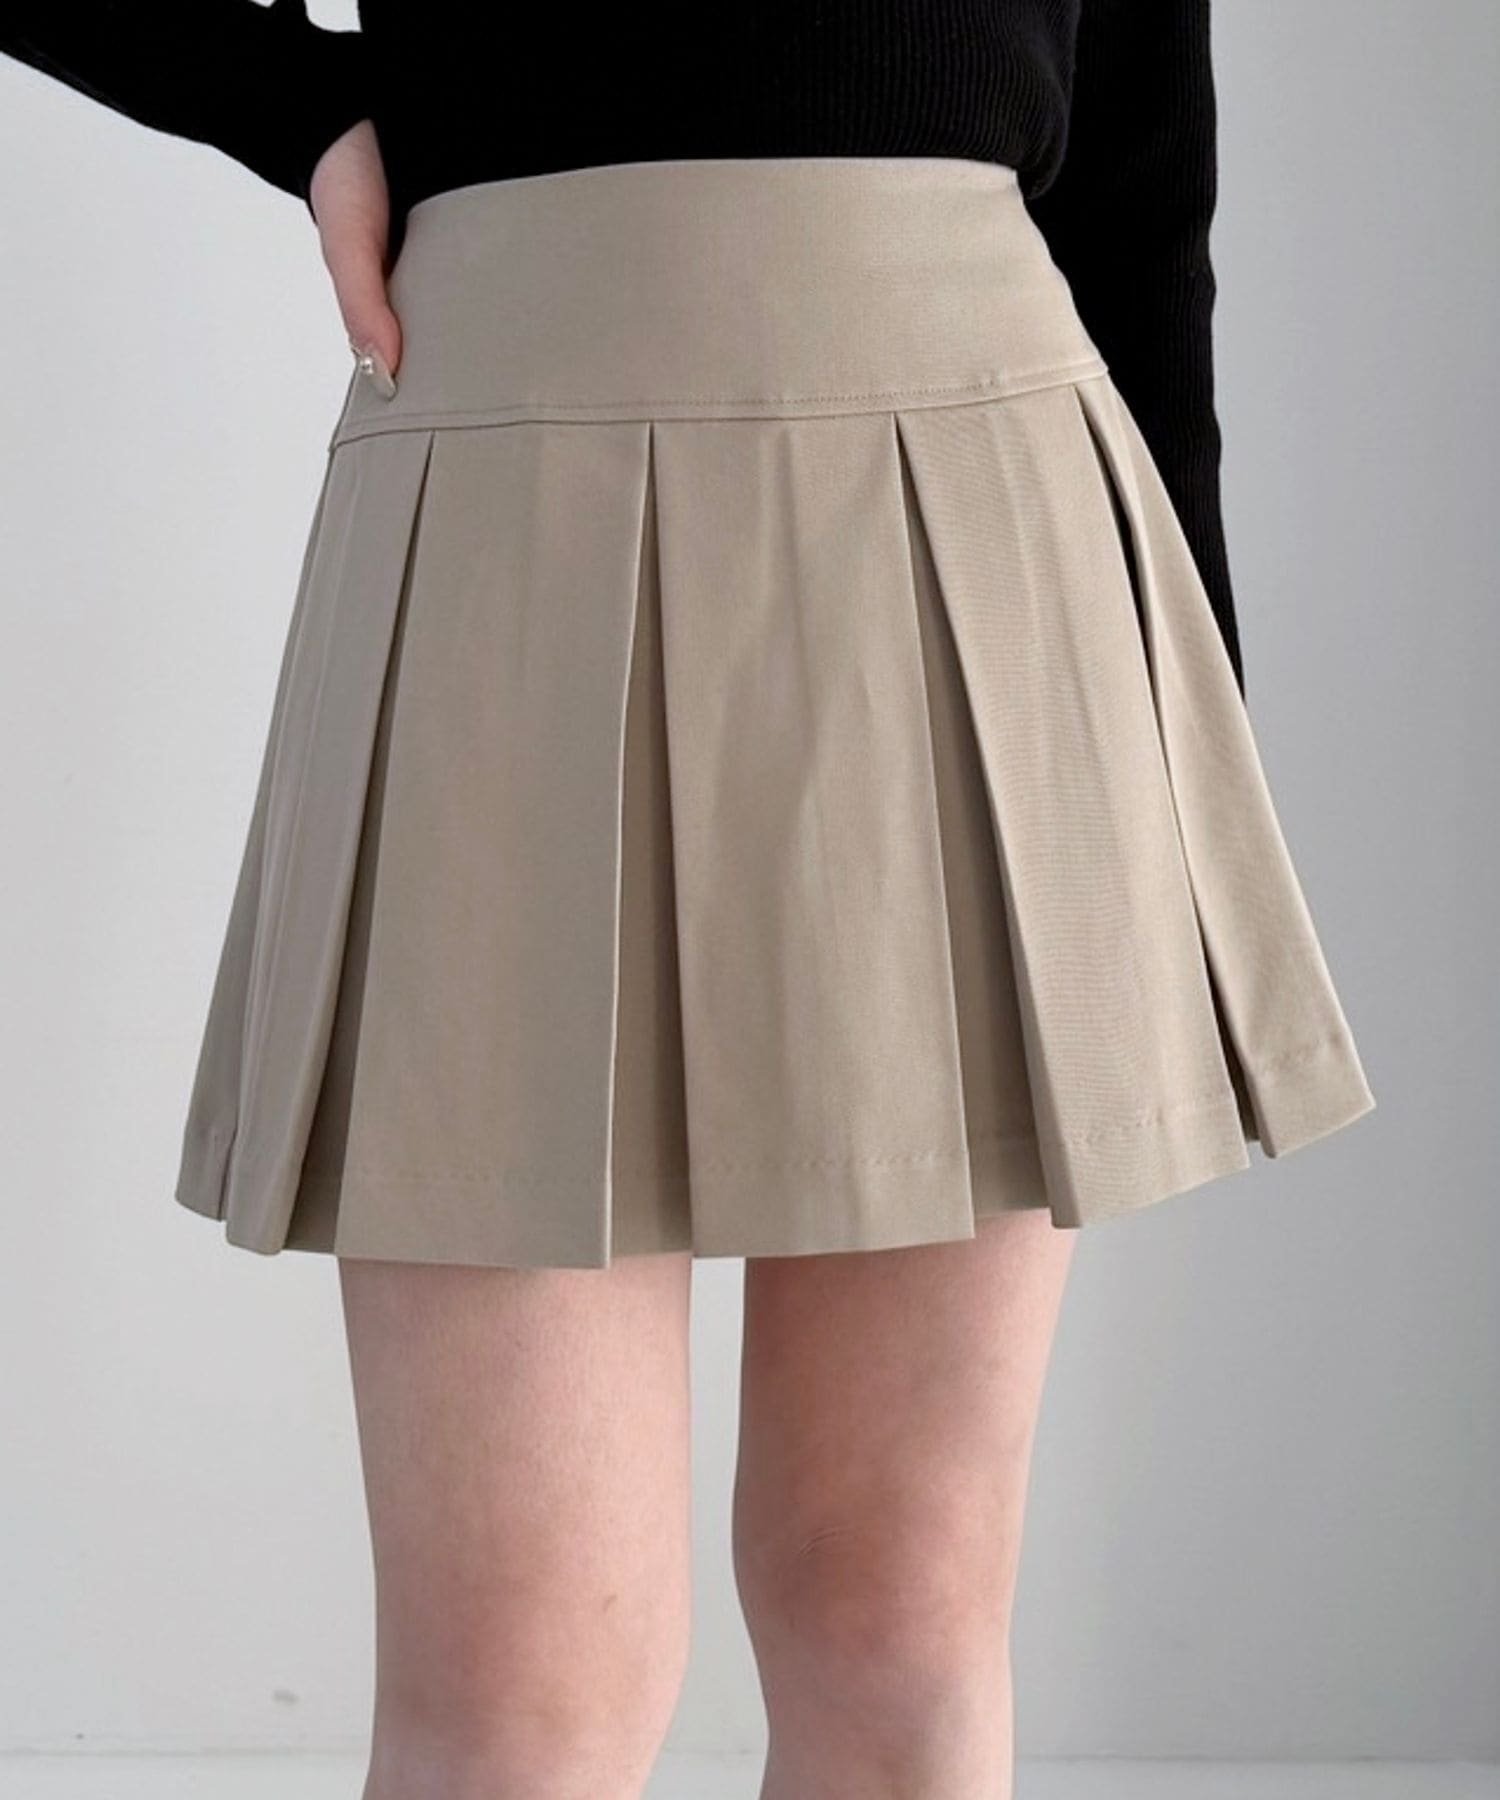 Heather ワイドプリーツミニスカート2 ヘザー スカート ミニスカート【送料無料】 3